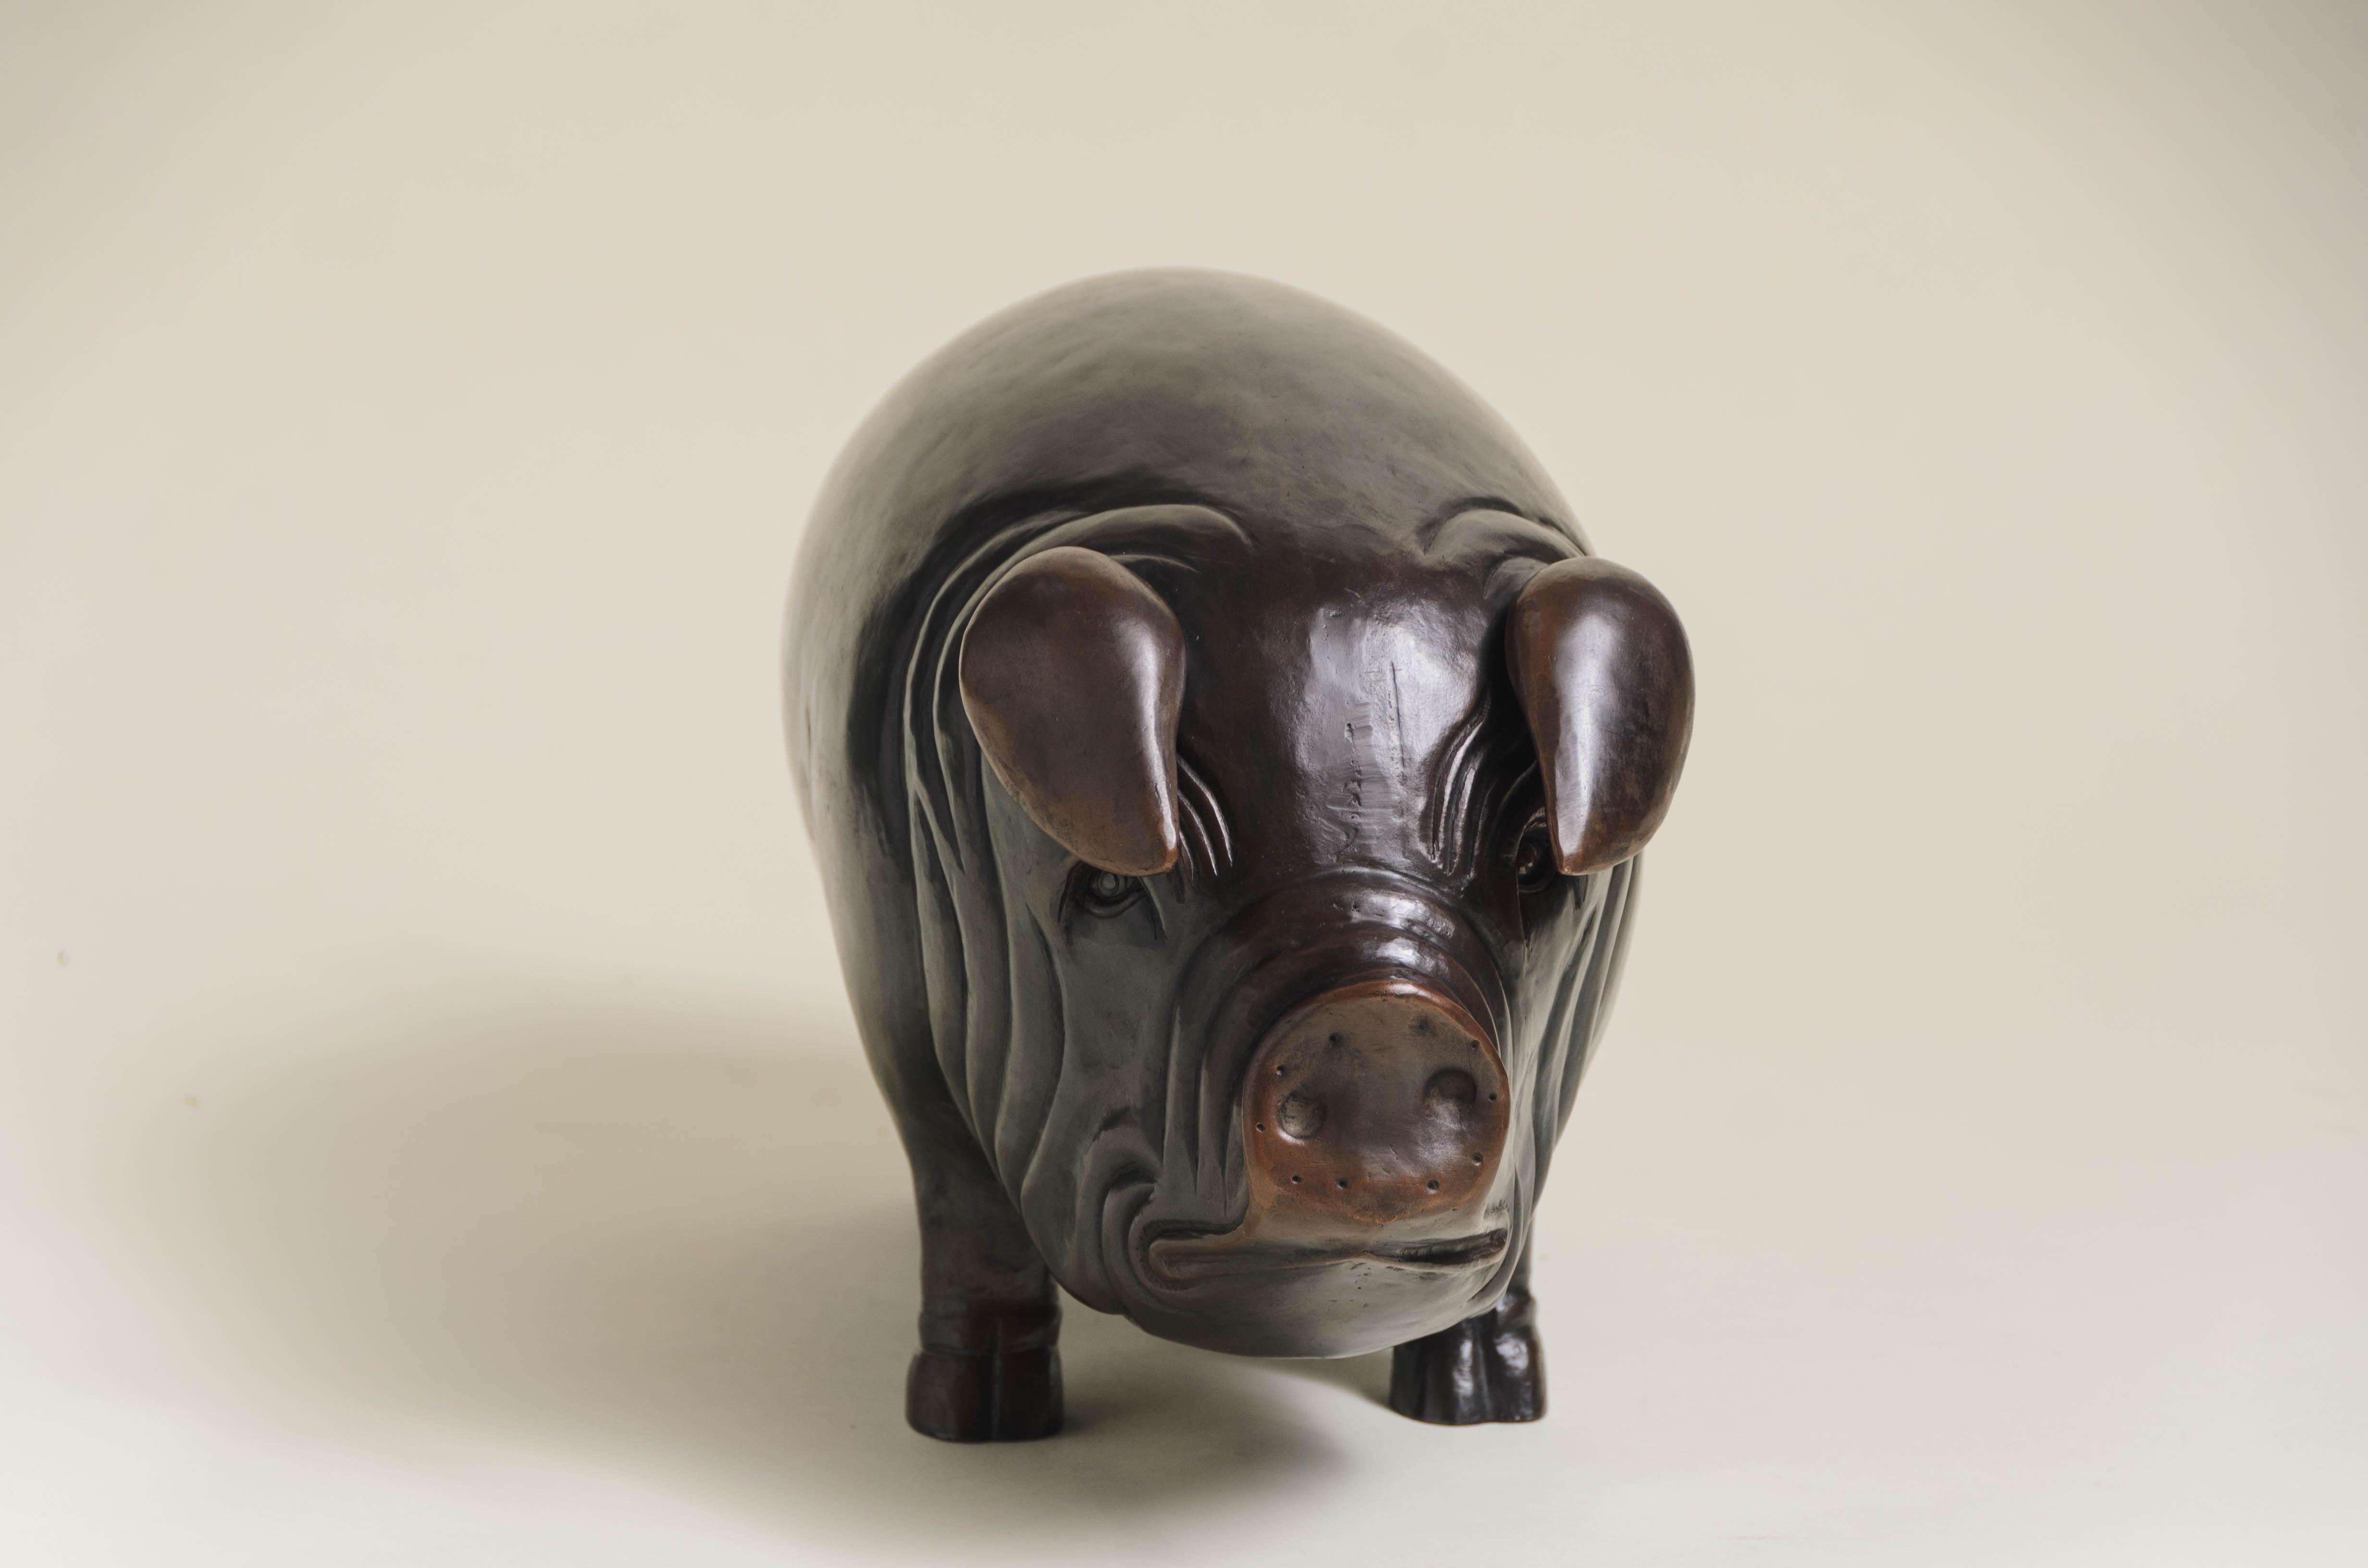 Schweineskulptur
Antikkupfer dunkel
Hand Repoussé
Zeitgenössisch
Limitierte Auflage
Jedes Stück wird individuell angefertigt und ist einzigartig. 
Repoussé ist die traditionelle Kunst, ein dekoratives Relief von Hand auf ein Blech zu hämmern. Die